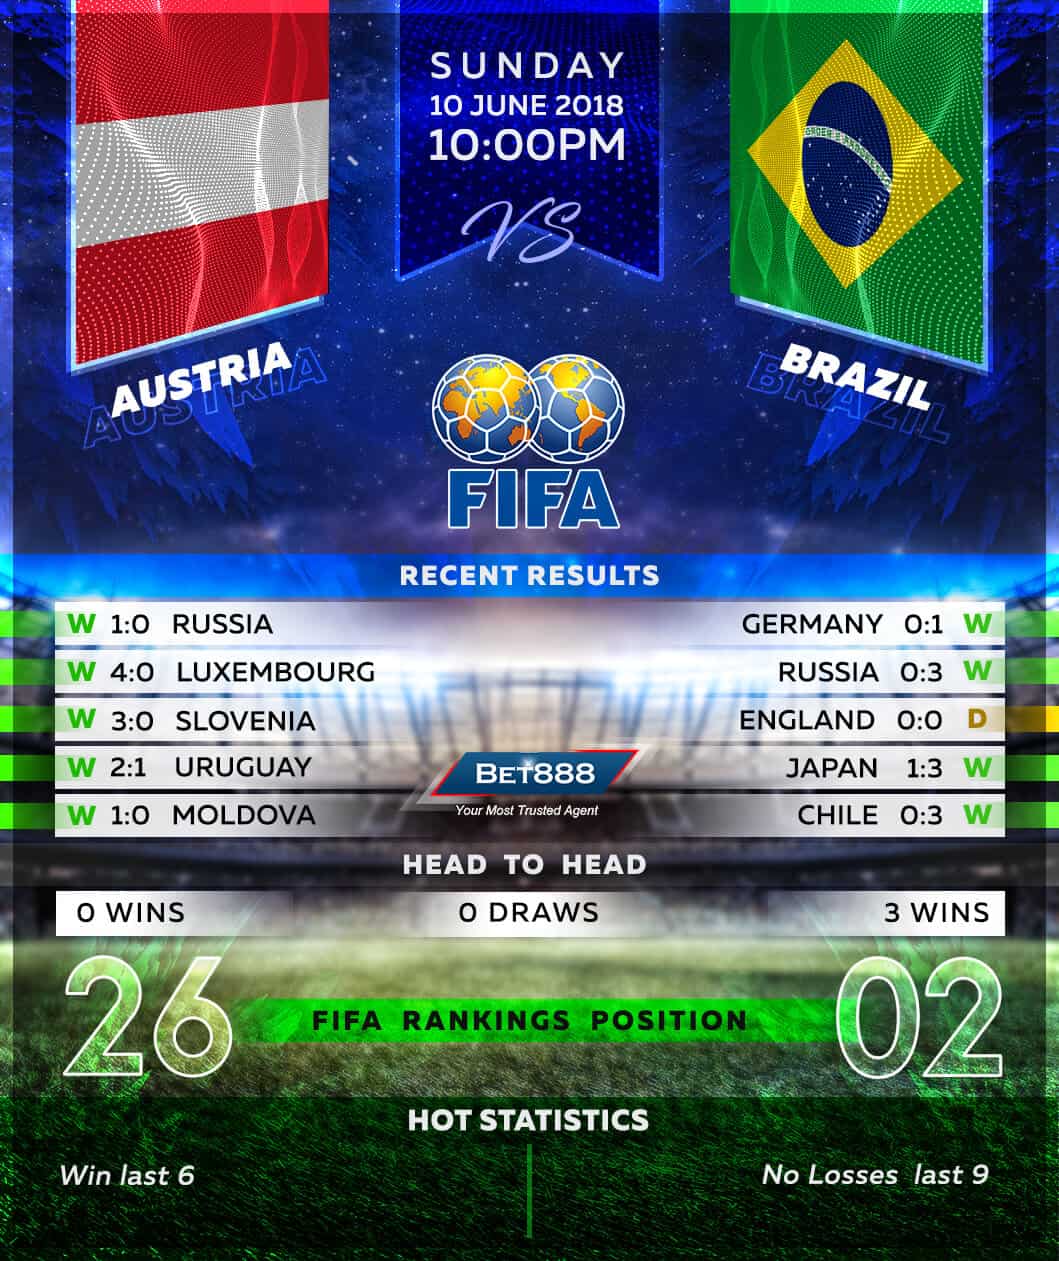 Austria vs Brazil 10/06/18